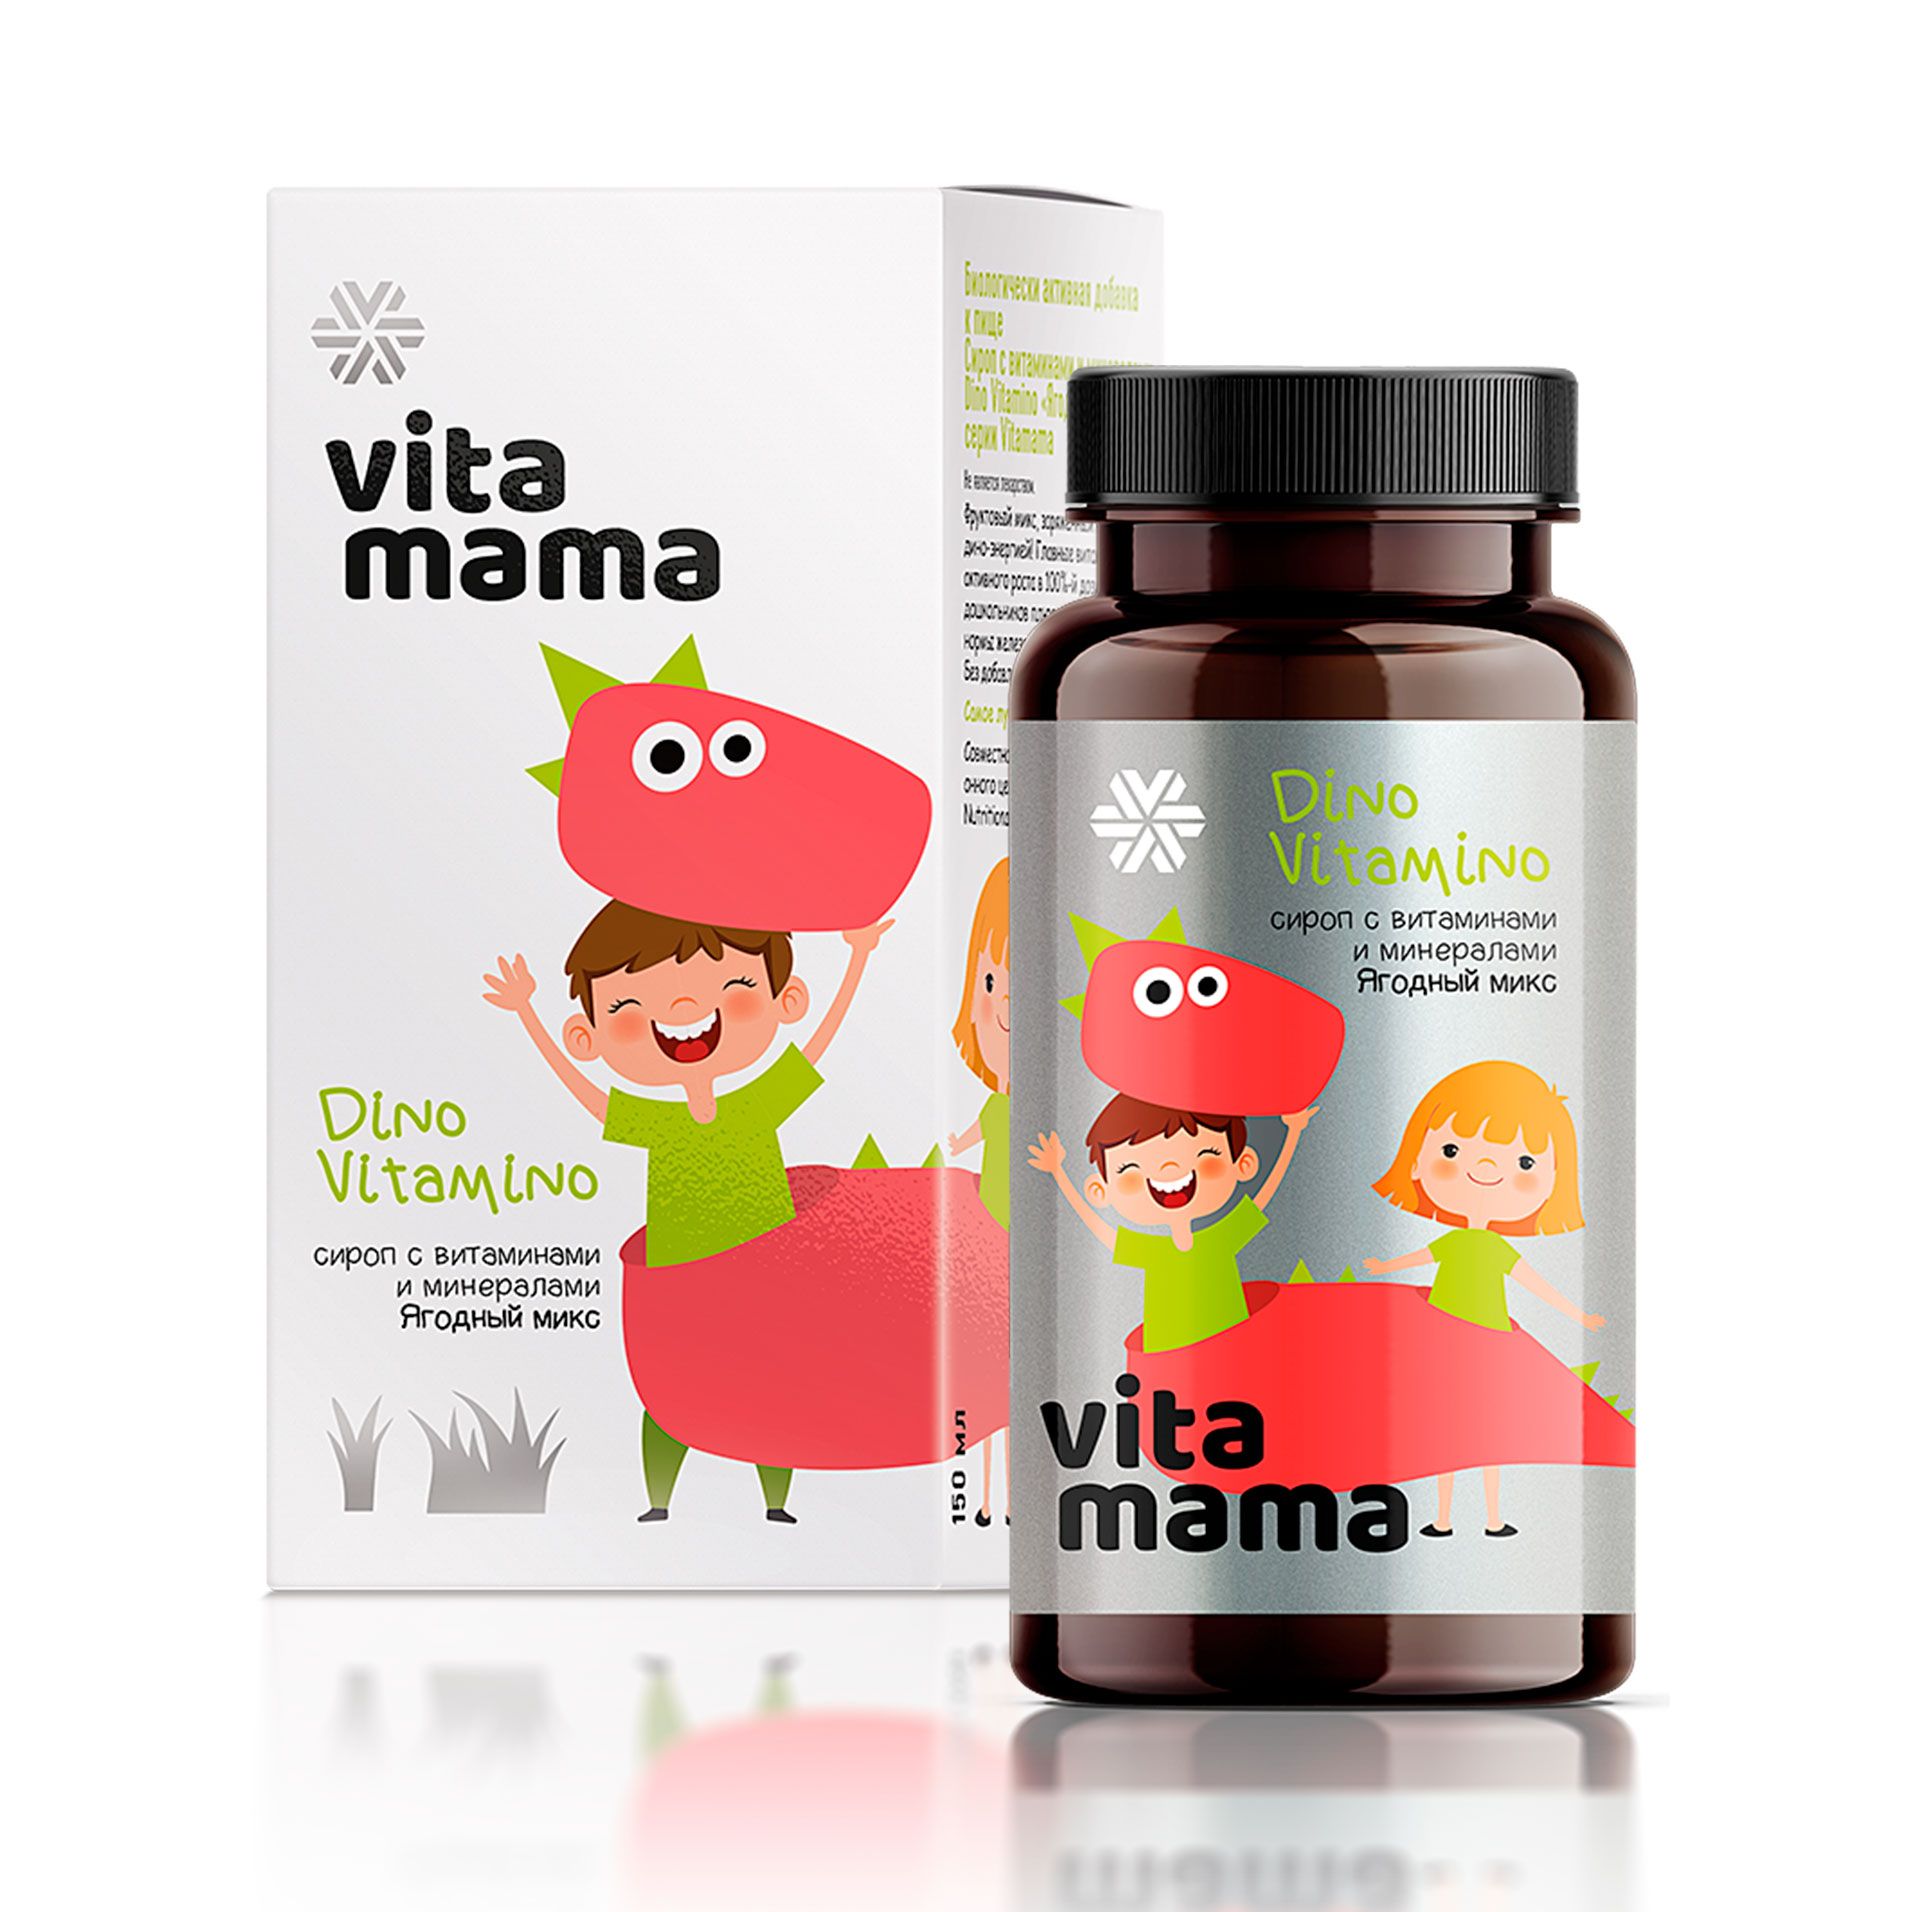 Vitamama - Dino Vitamino, ягодный сироп с витаминами и минералами